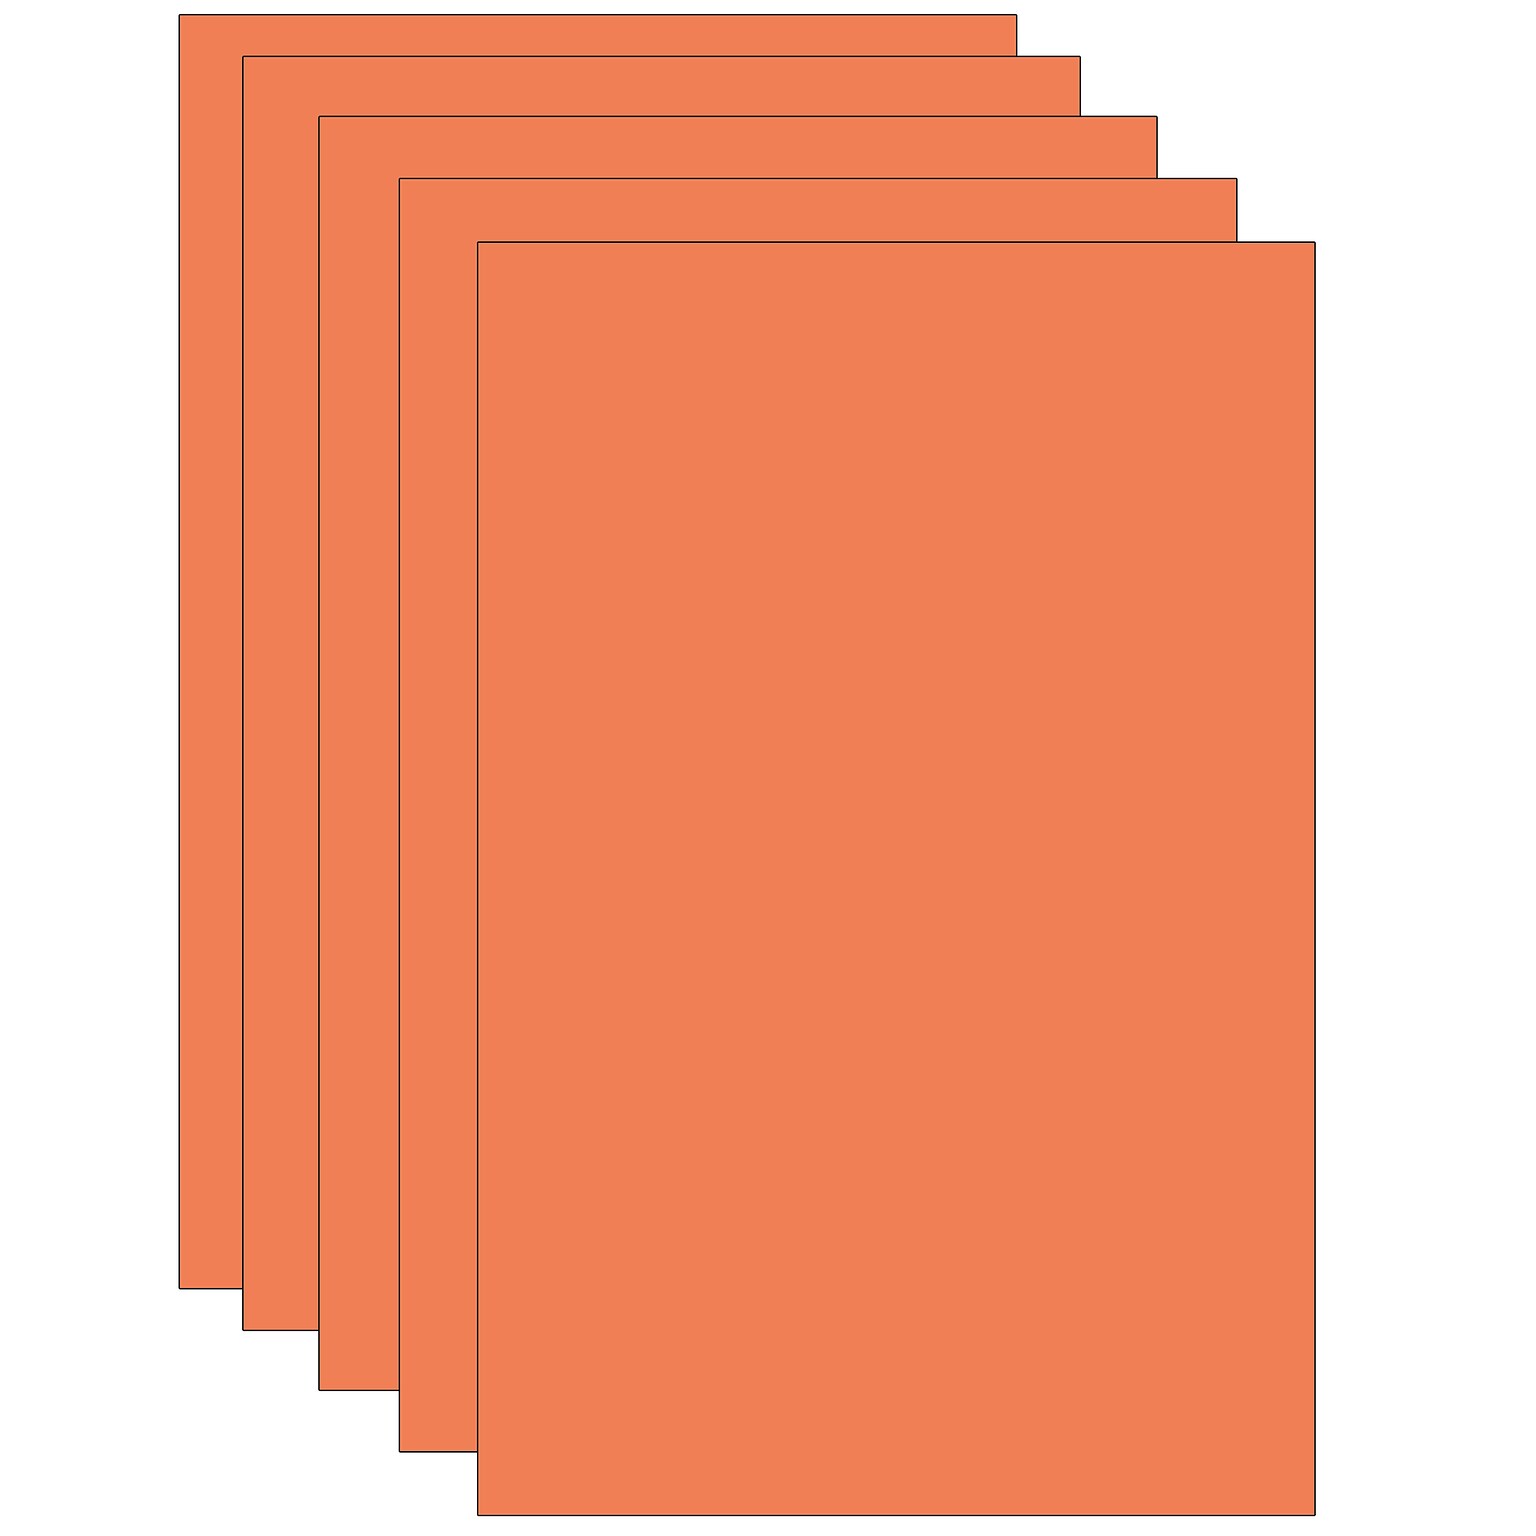 Spectra Deluxe Bleeding Art Tissue, Orange, 20 x 30, 24 Sheets/Pack, 5 Packs (PAC59162-5)